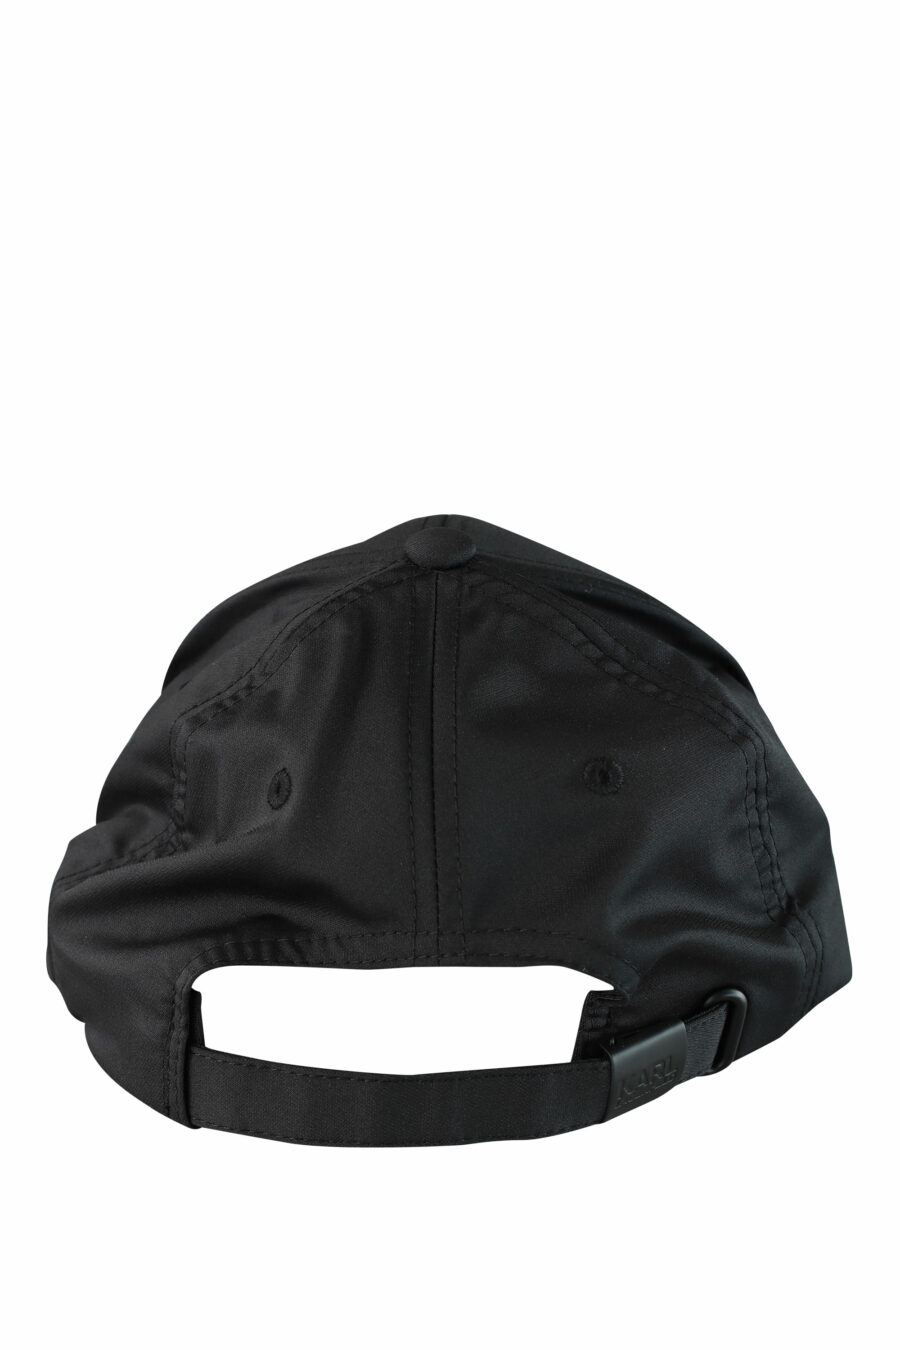 Gorra negra con logo etiqueta - IMG 1528